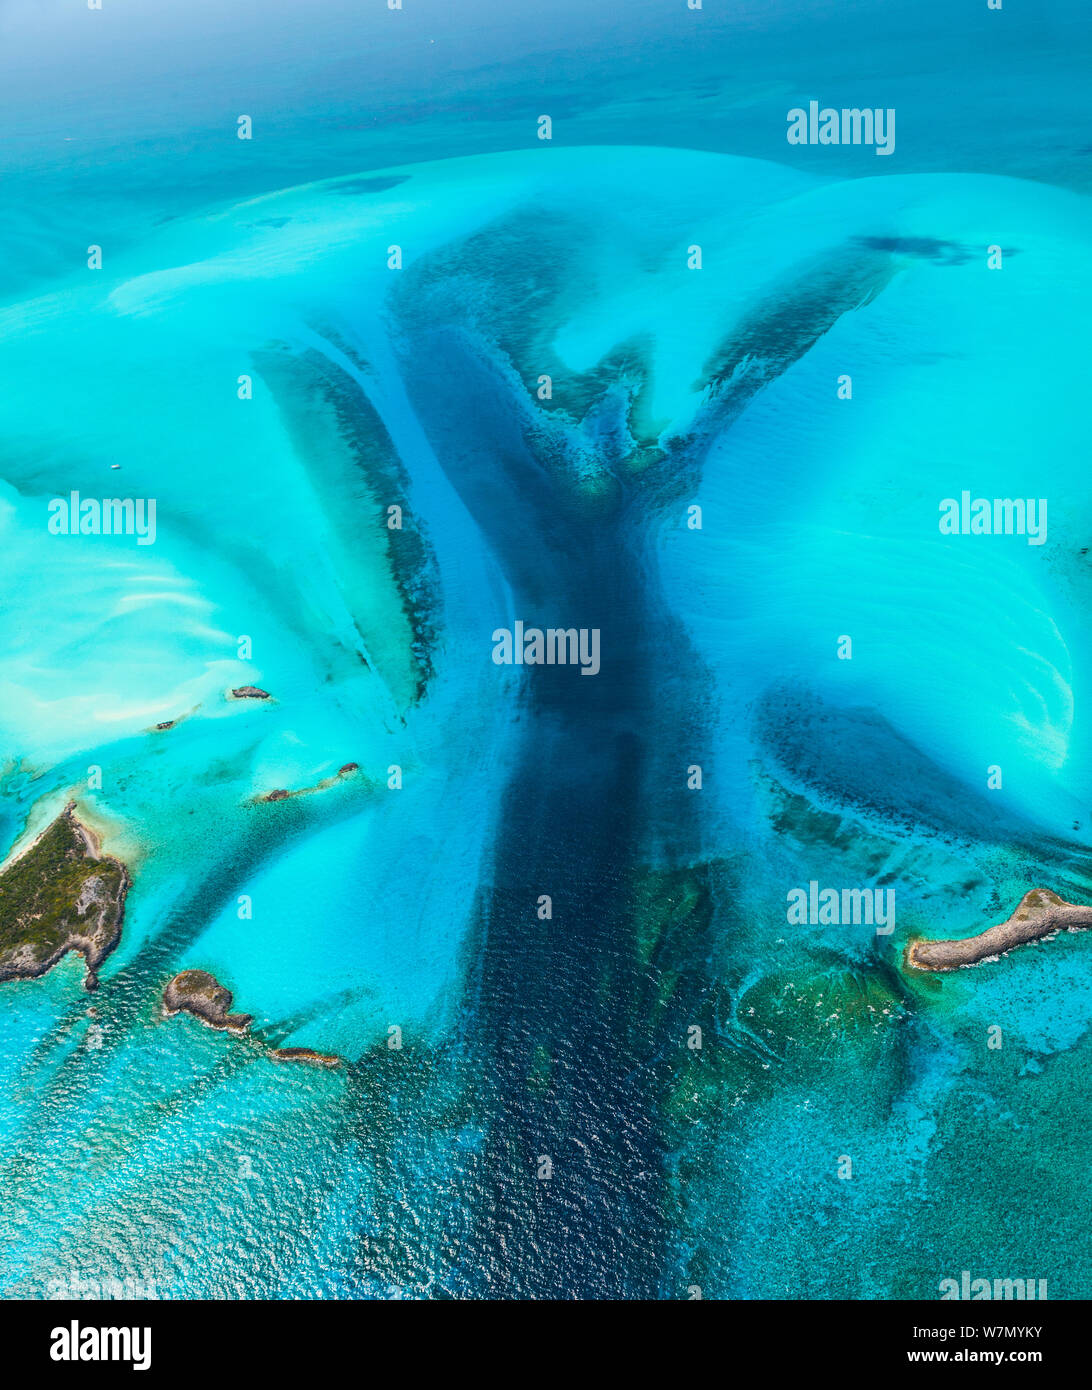 Imagen aérea muestra bancos de arena e islas del archipiélago de las Bahamas, el Caribe, febrero de 2012 Foto de stock